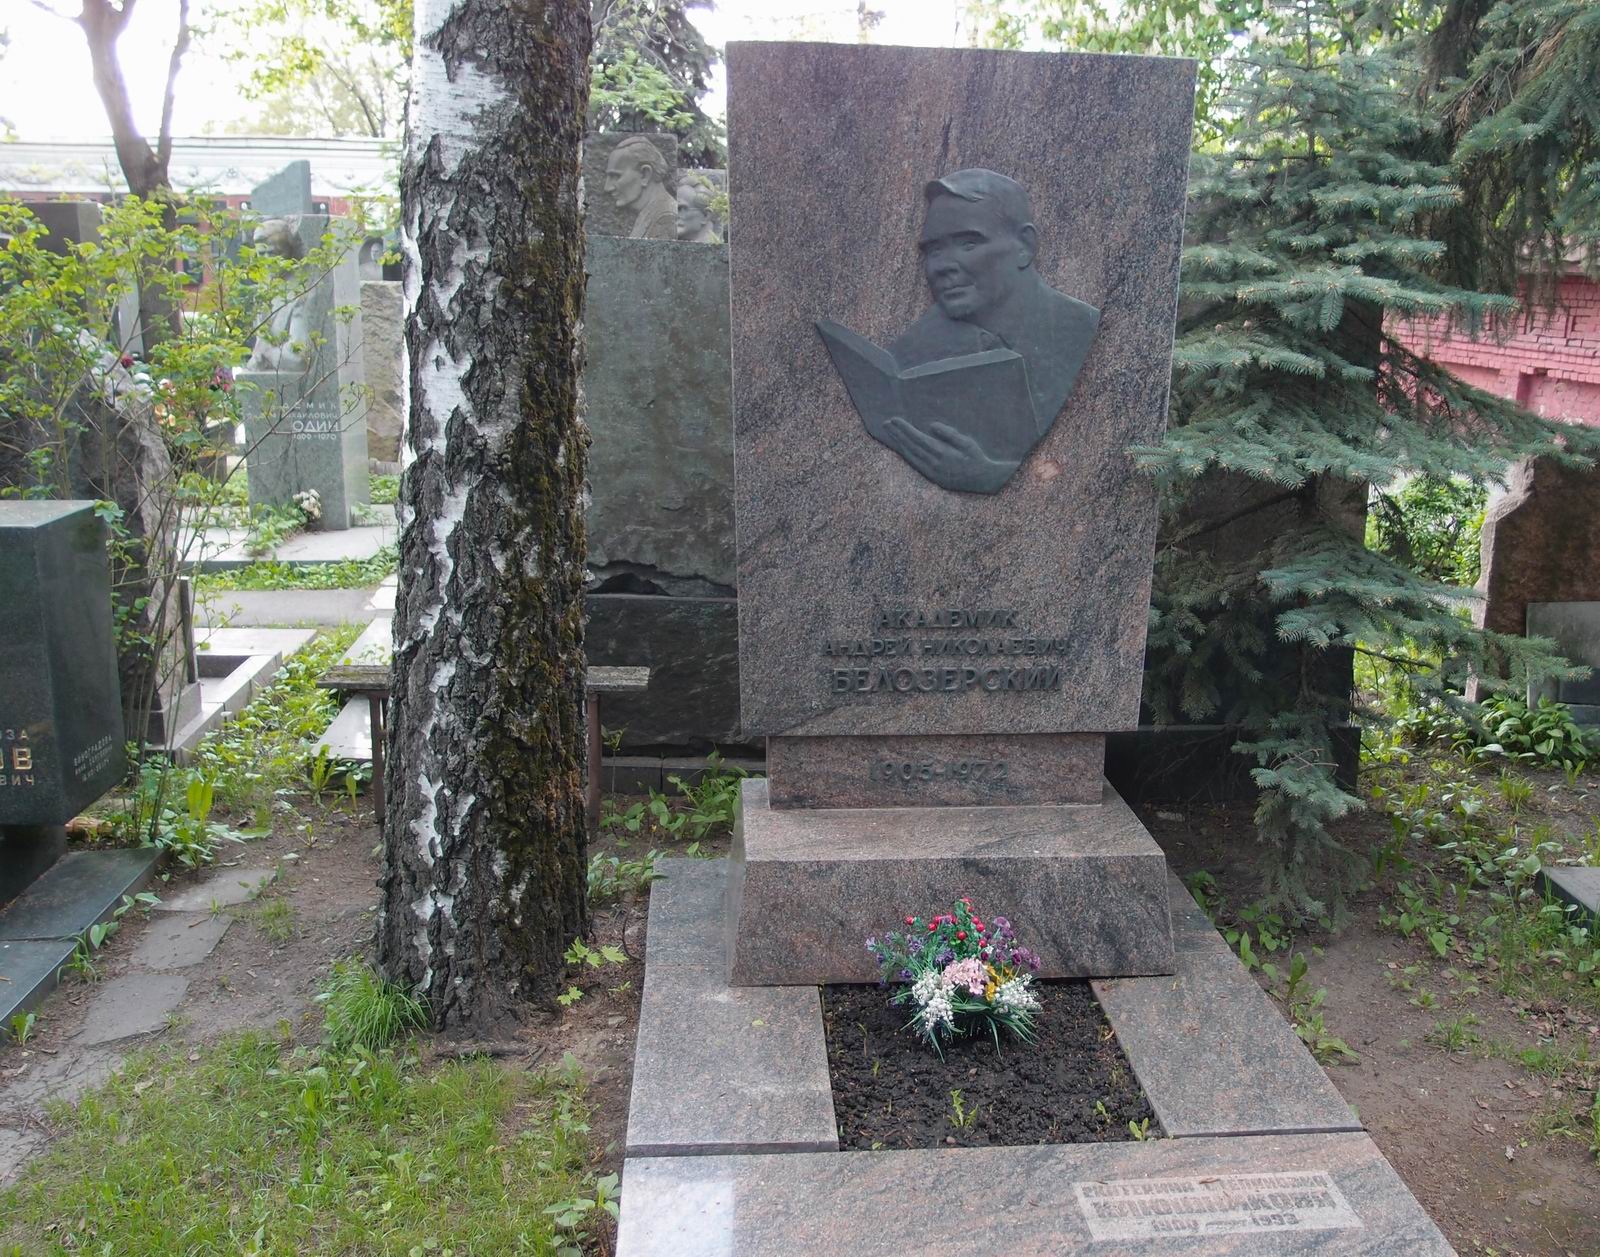 Памятник на могиле Белозерскому А.Н. (1905-1972), ск. И.Козловский, арх. А.Заварзин, на Новодевичьем кладбище (7-13-2).